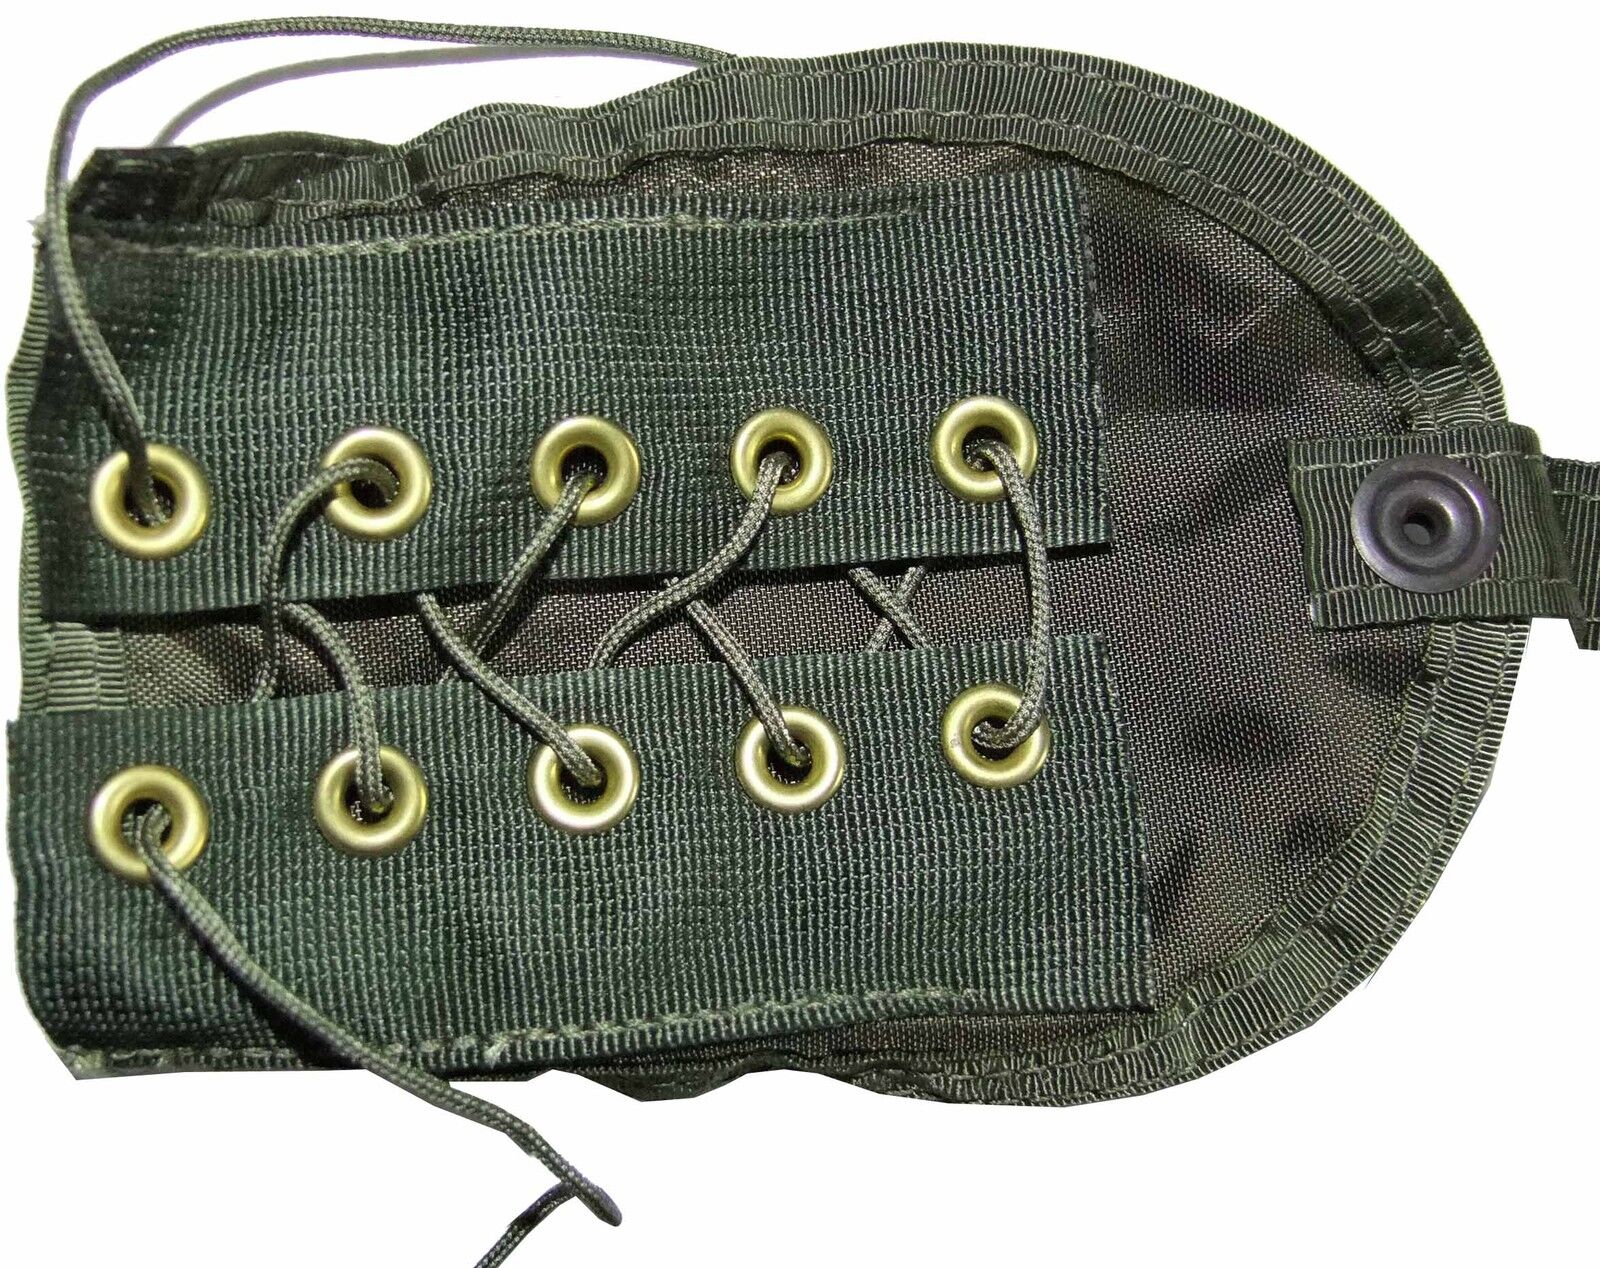 US Military SDU-5/E Survival Strobe Pouch Case Survival Vest Component / New